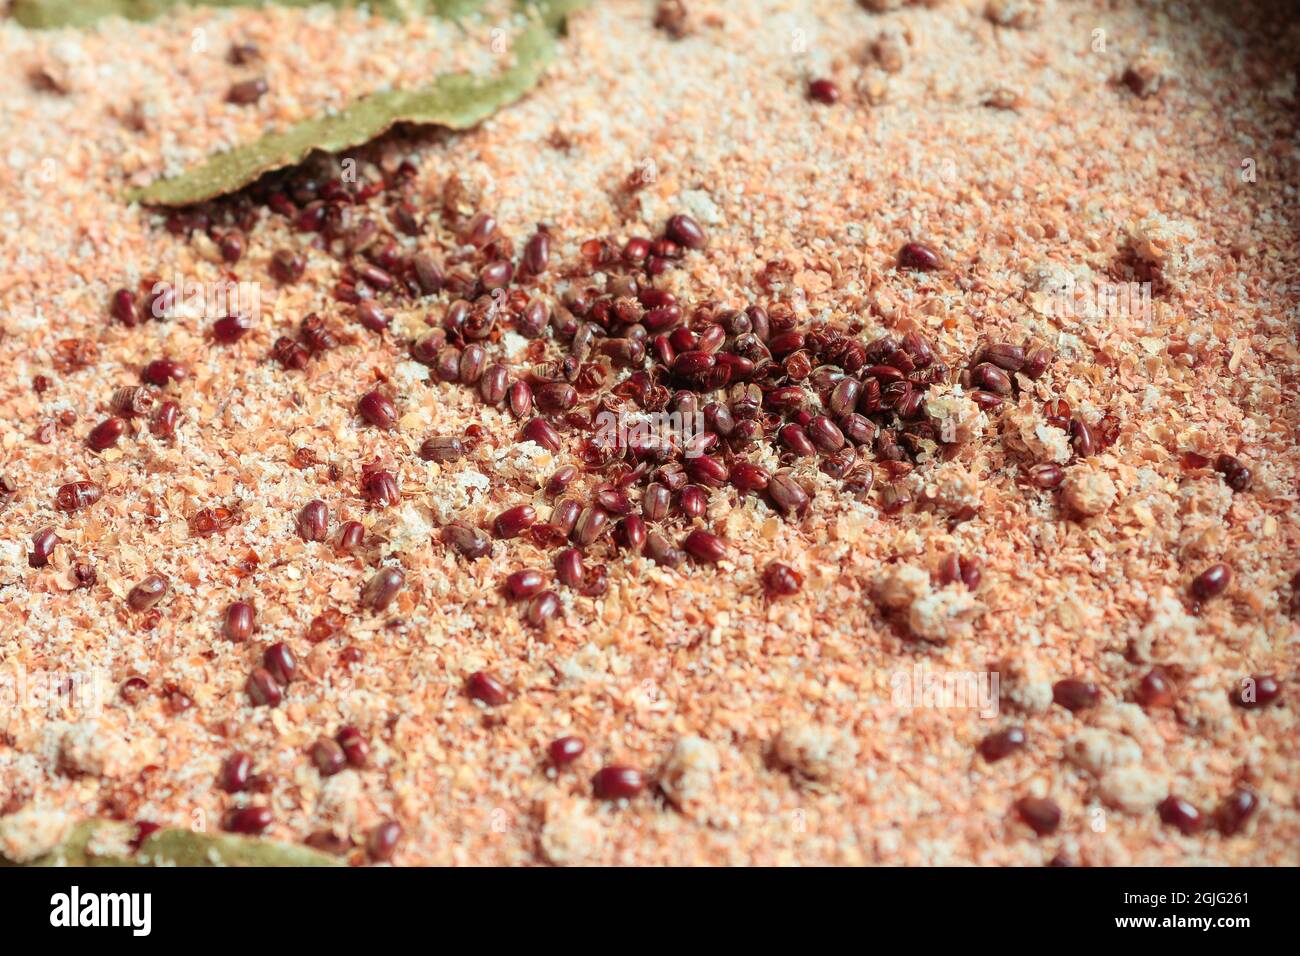 Infestación de escarabajos de tabaco / harina. Foto de stock